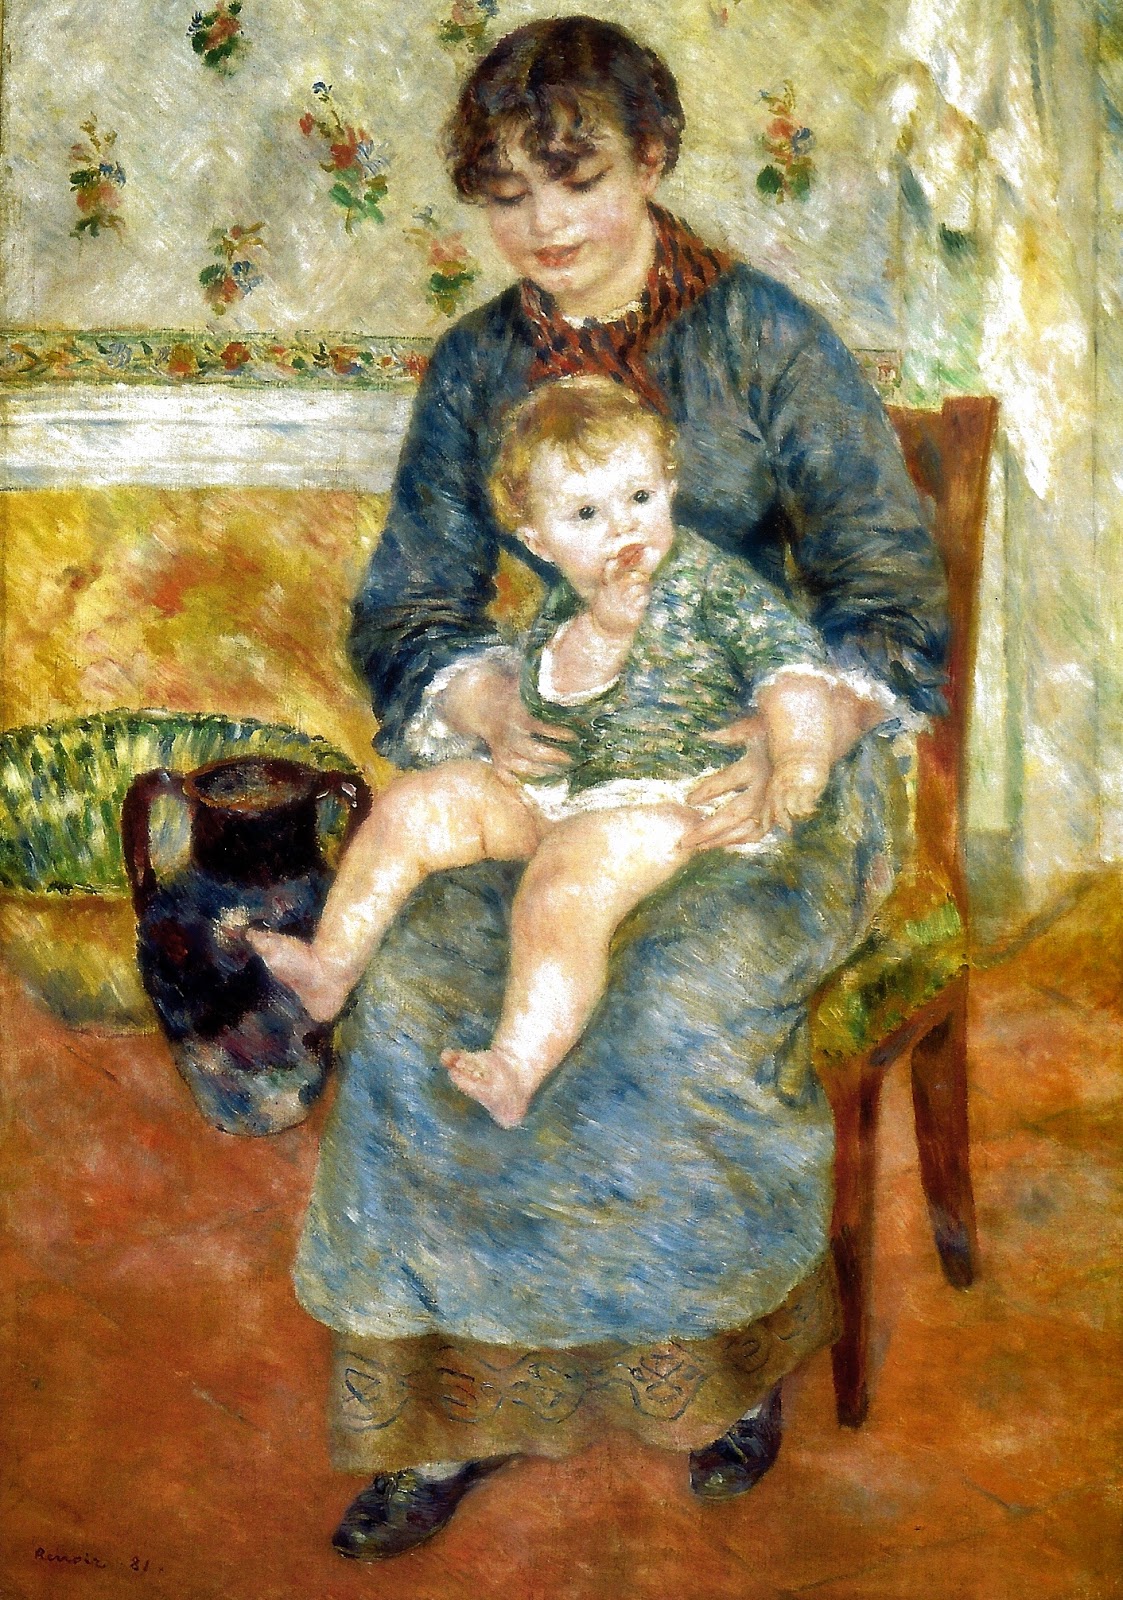 Pierre+Auguste+Renoir-1841-1-19 (797).jpg